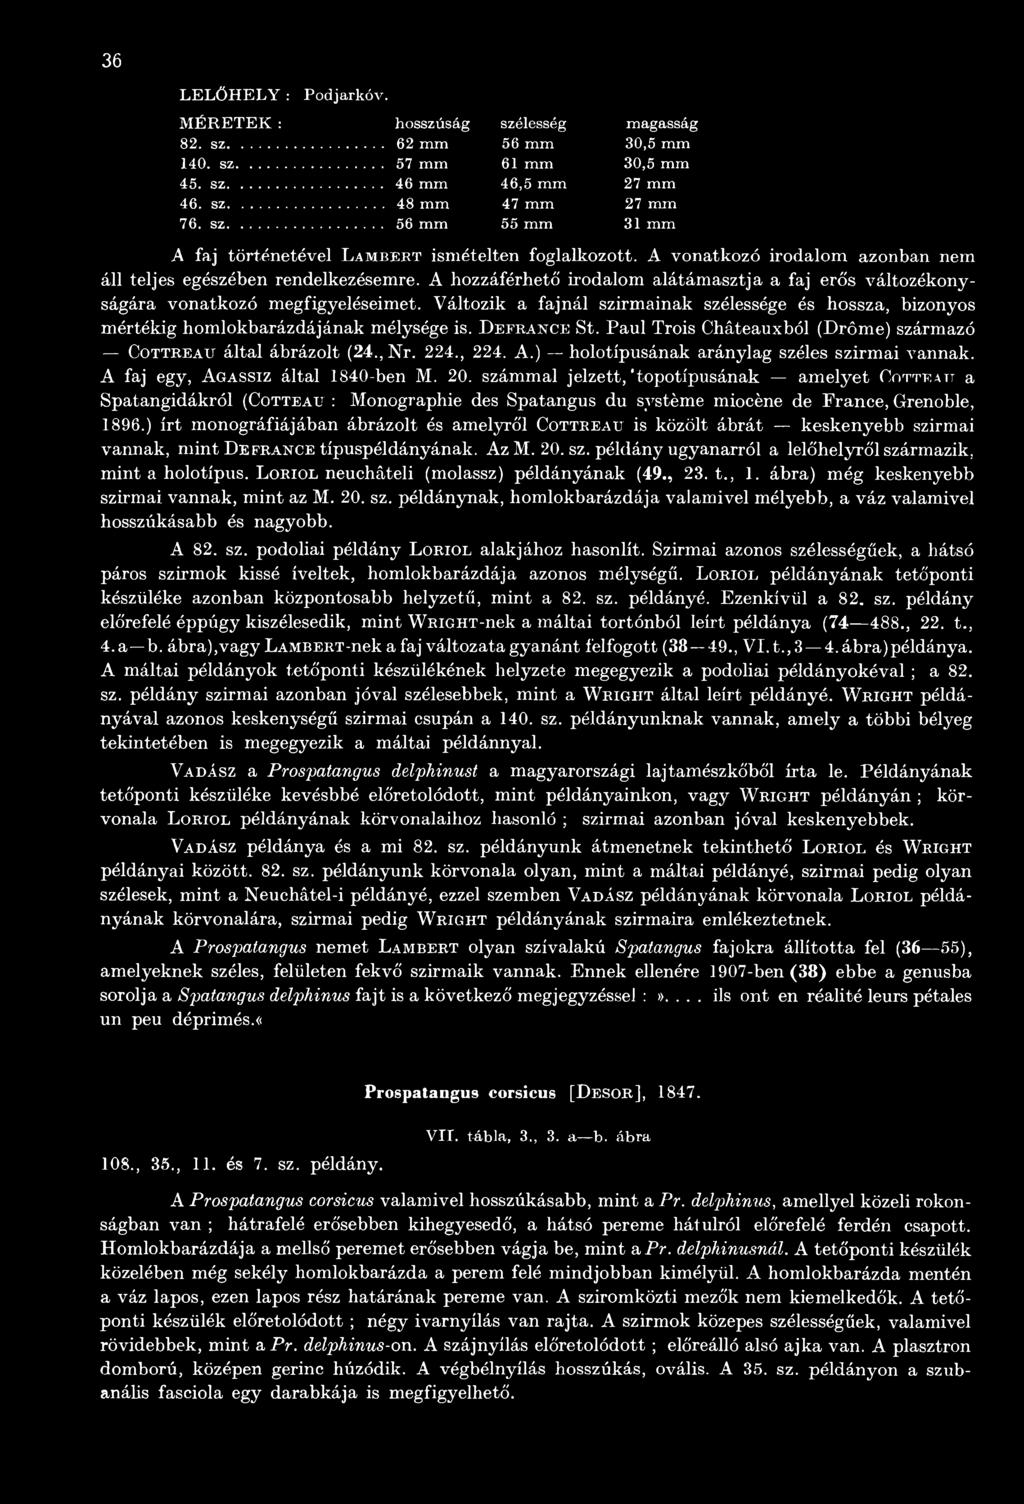 számmal jelzett, "topotípusának amelyet C o t t e att a Spatangidákról (Cotteau : Monographie des Spatangus du système miocène de Prance, Grenoble, 1896.